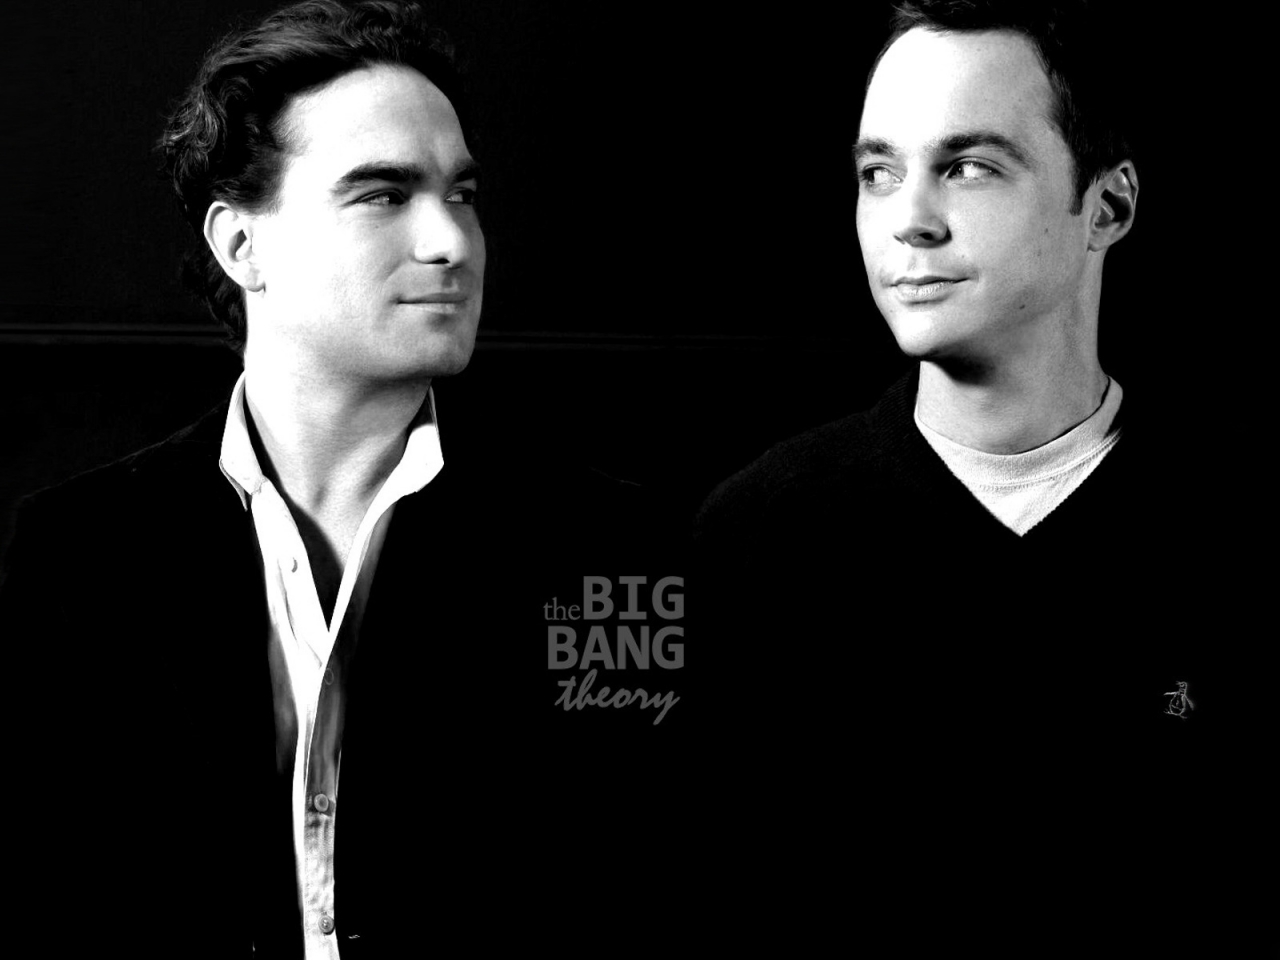 The Big Bang Theory Leonard and Sheldon for 1280 x 960 resolution